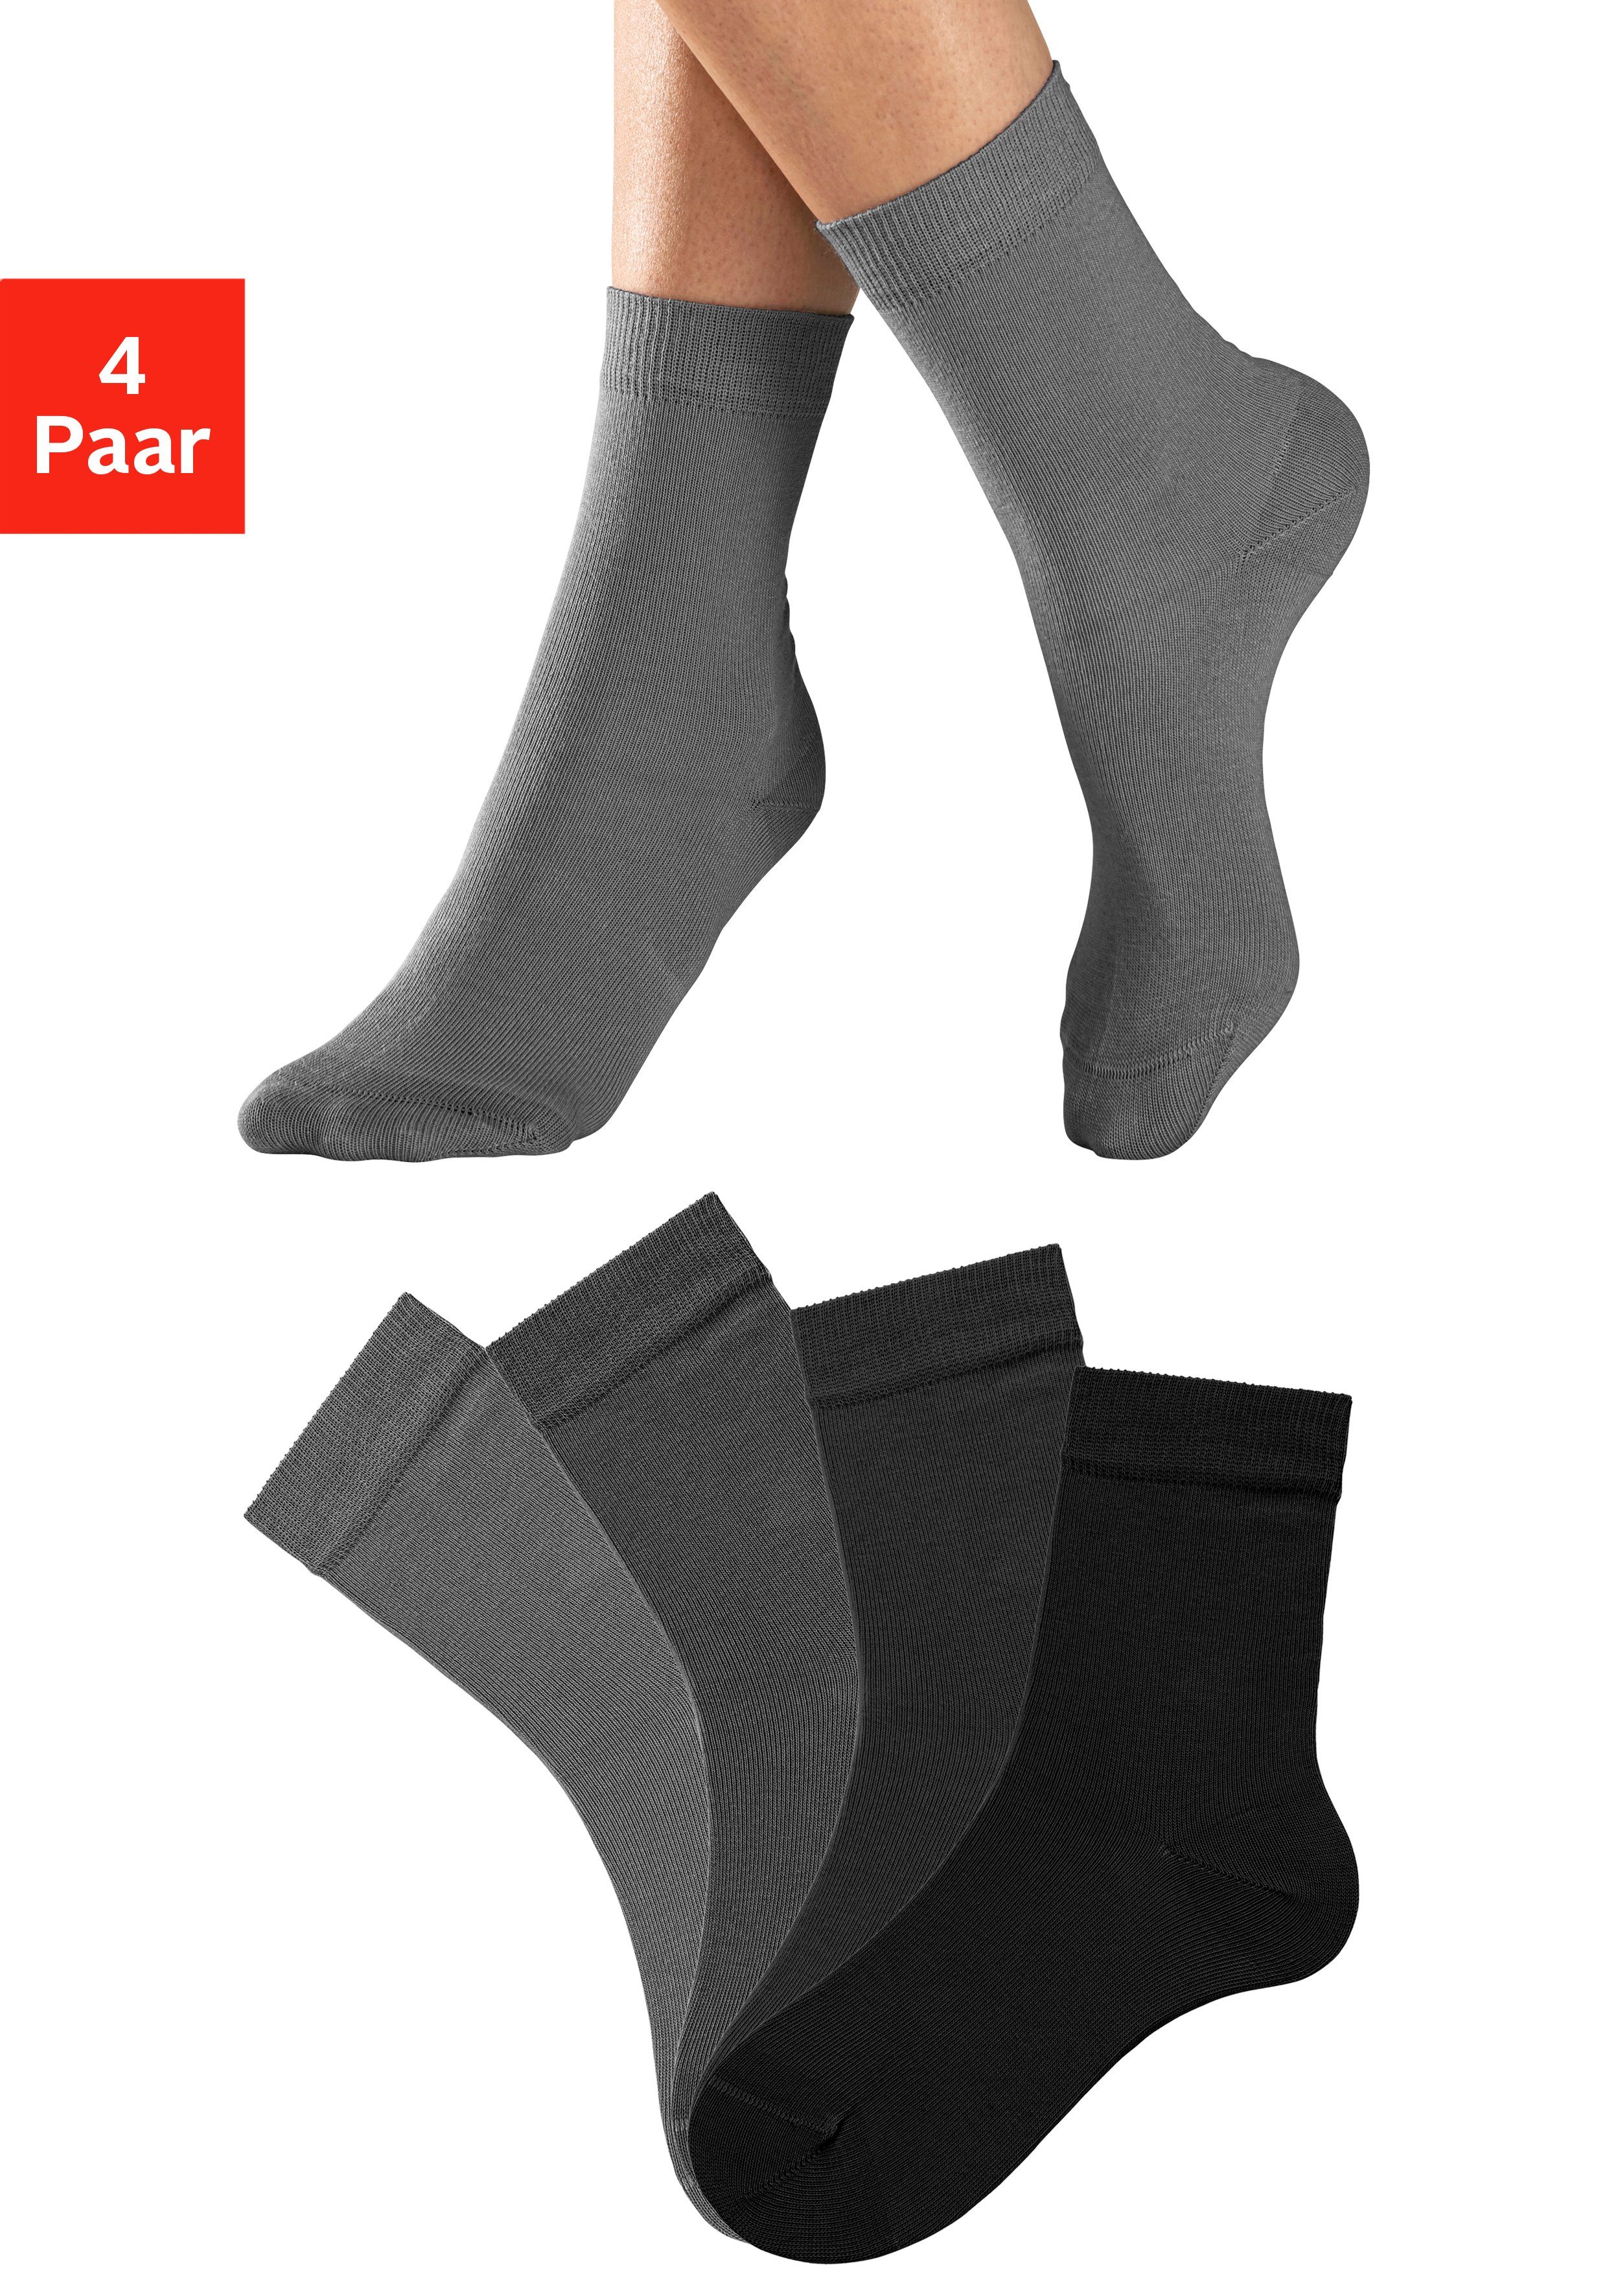 Sonderpreisverkauf H.I.S Socken (Set, 4-Paar) in unterschiedlichen grau-schwarz 4x Farbzusammenstellungen